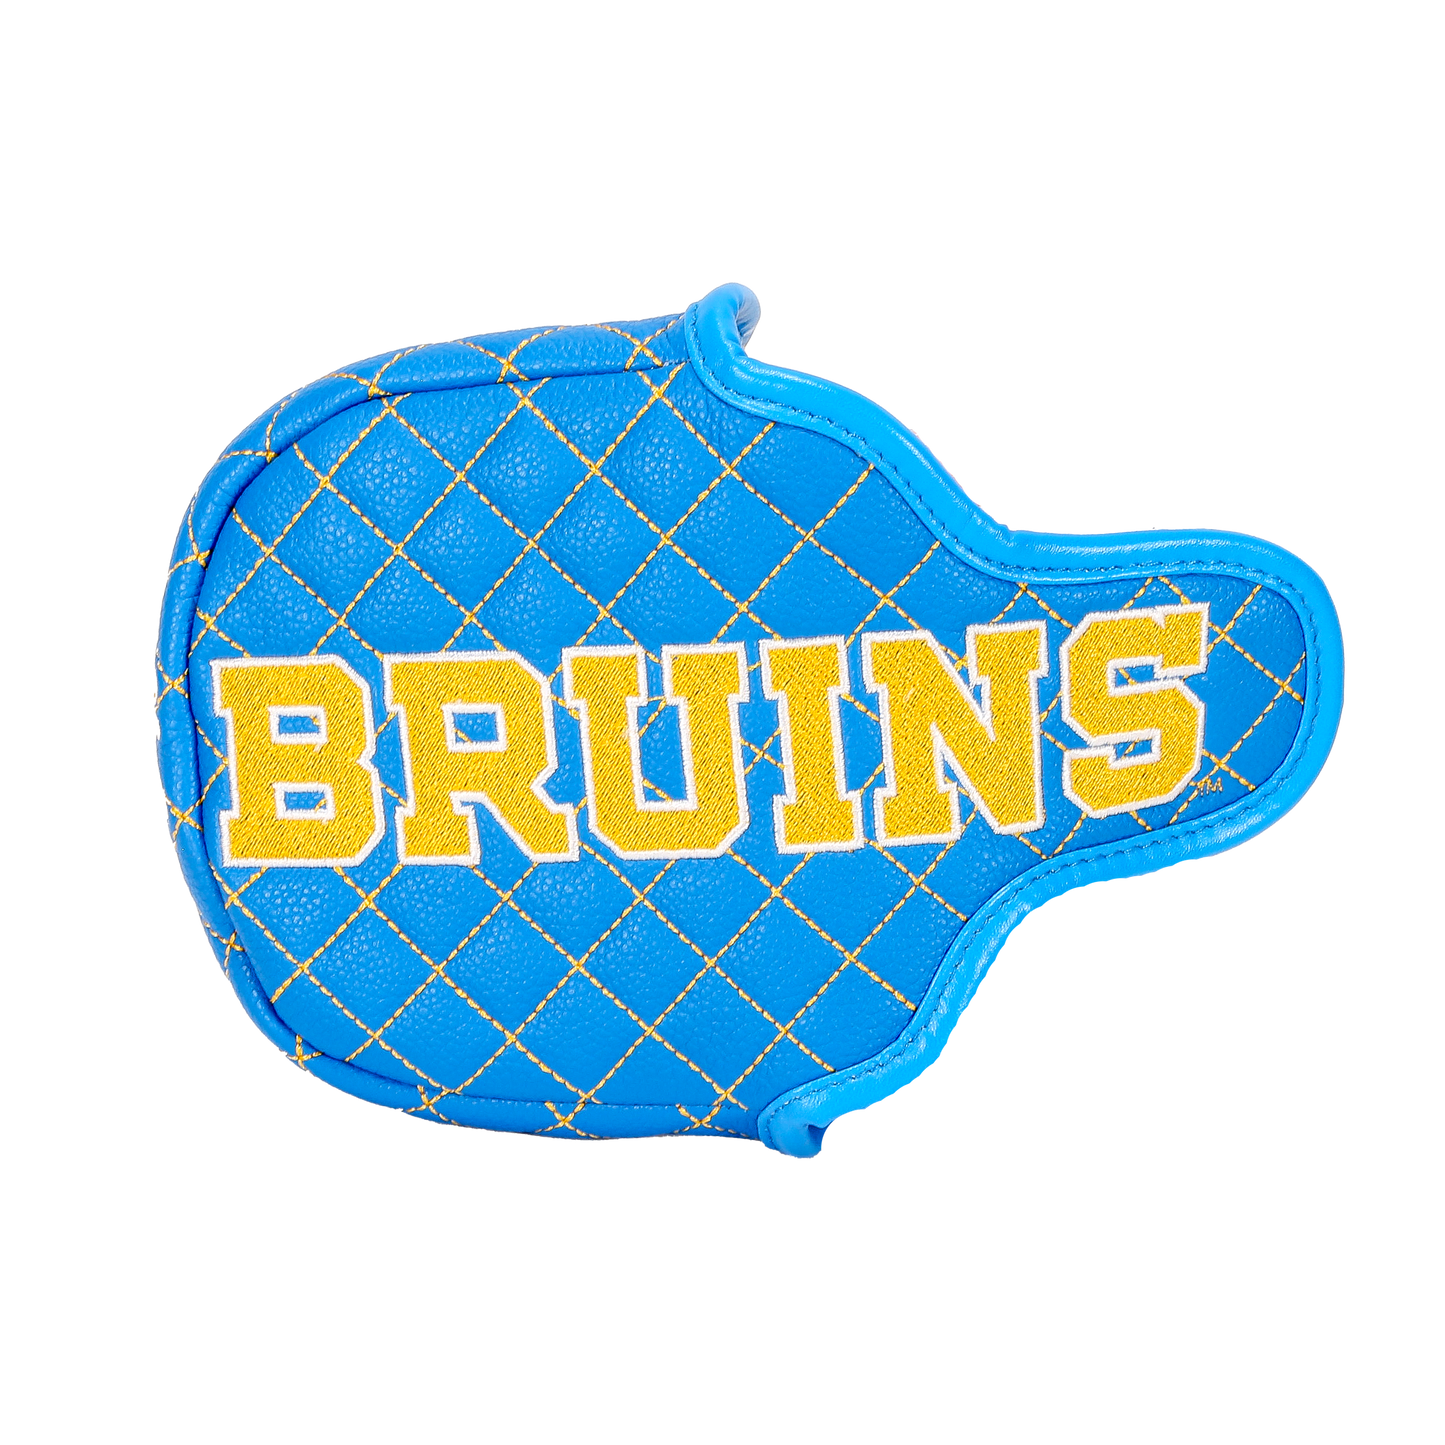 UCLA "Bruins" Mallet Putter Cover